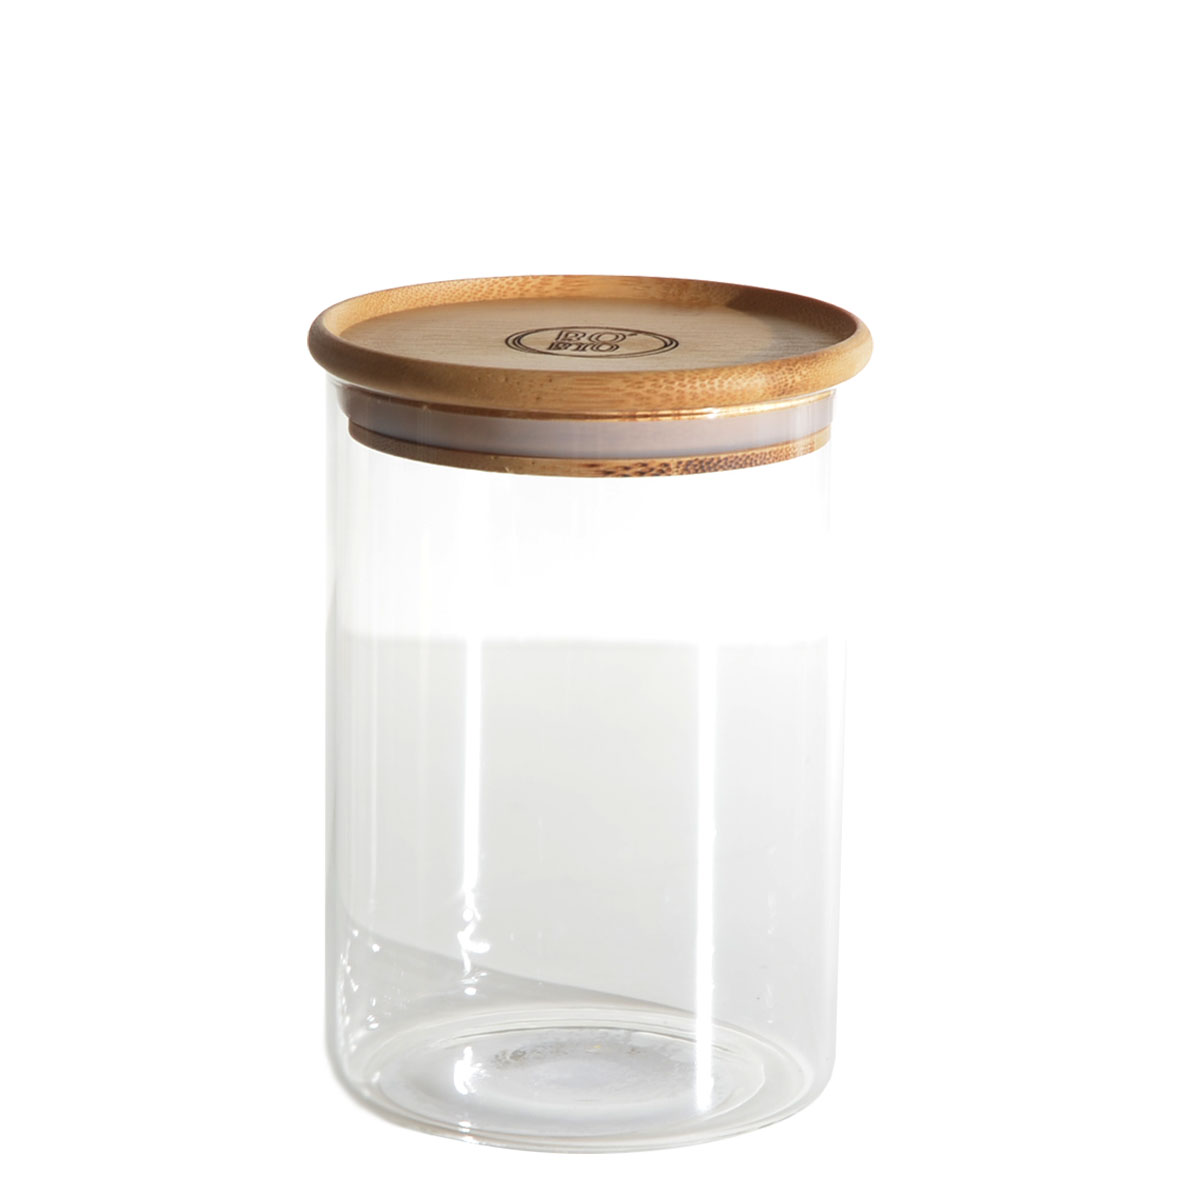 Jarre en verre 1,7 L avec couvercle en bambou - Contenant de stockage